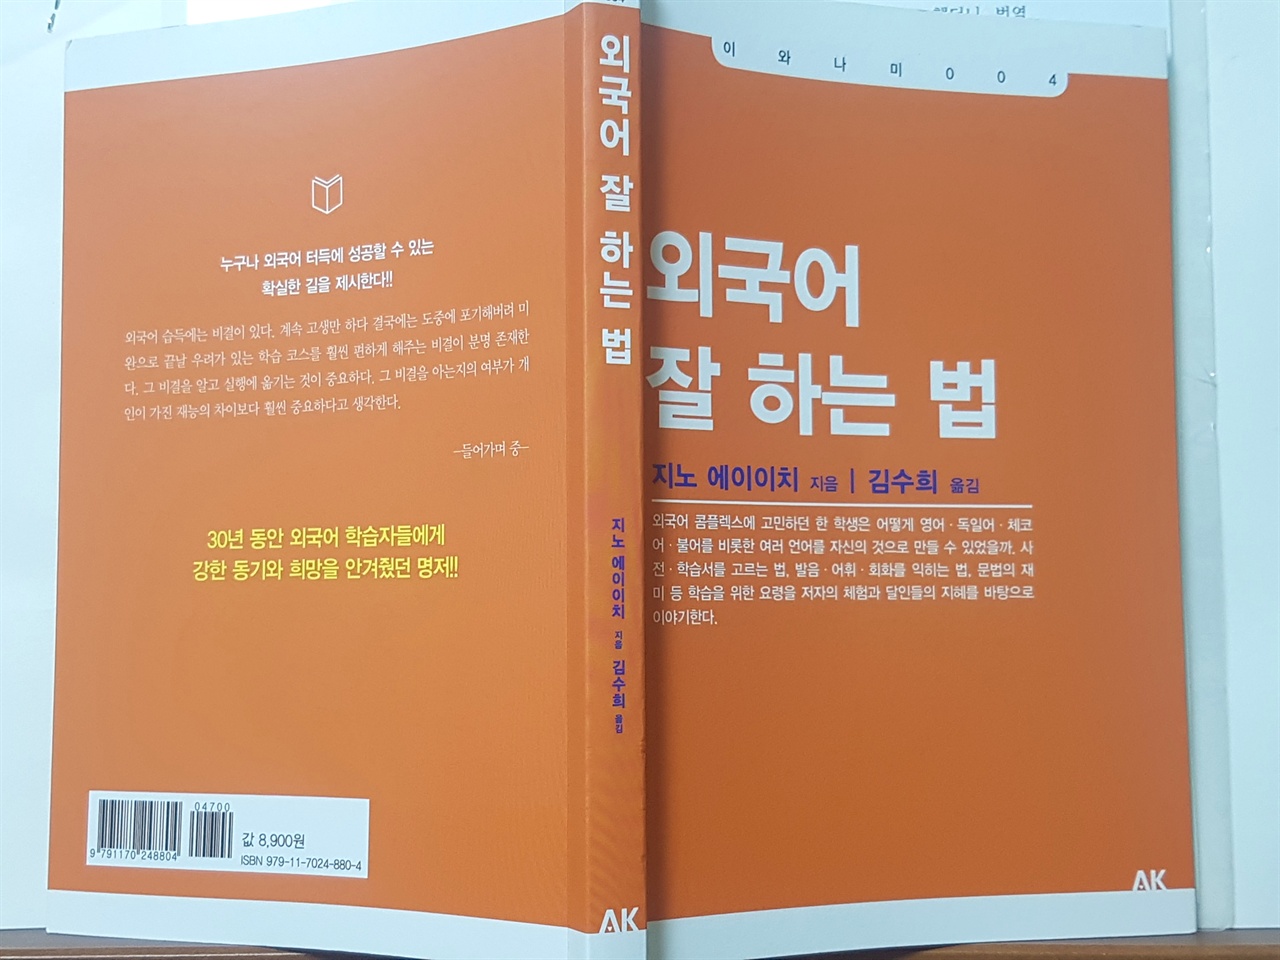 <외국어 잘하는 법> 표지. 지노 에이이치 지음, 김수희 옮김. 에이케이커뮤니케이션즈